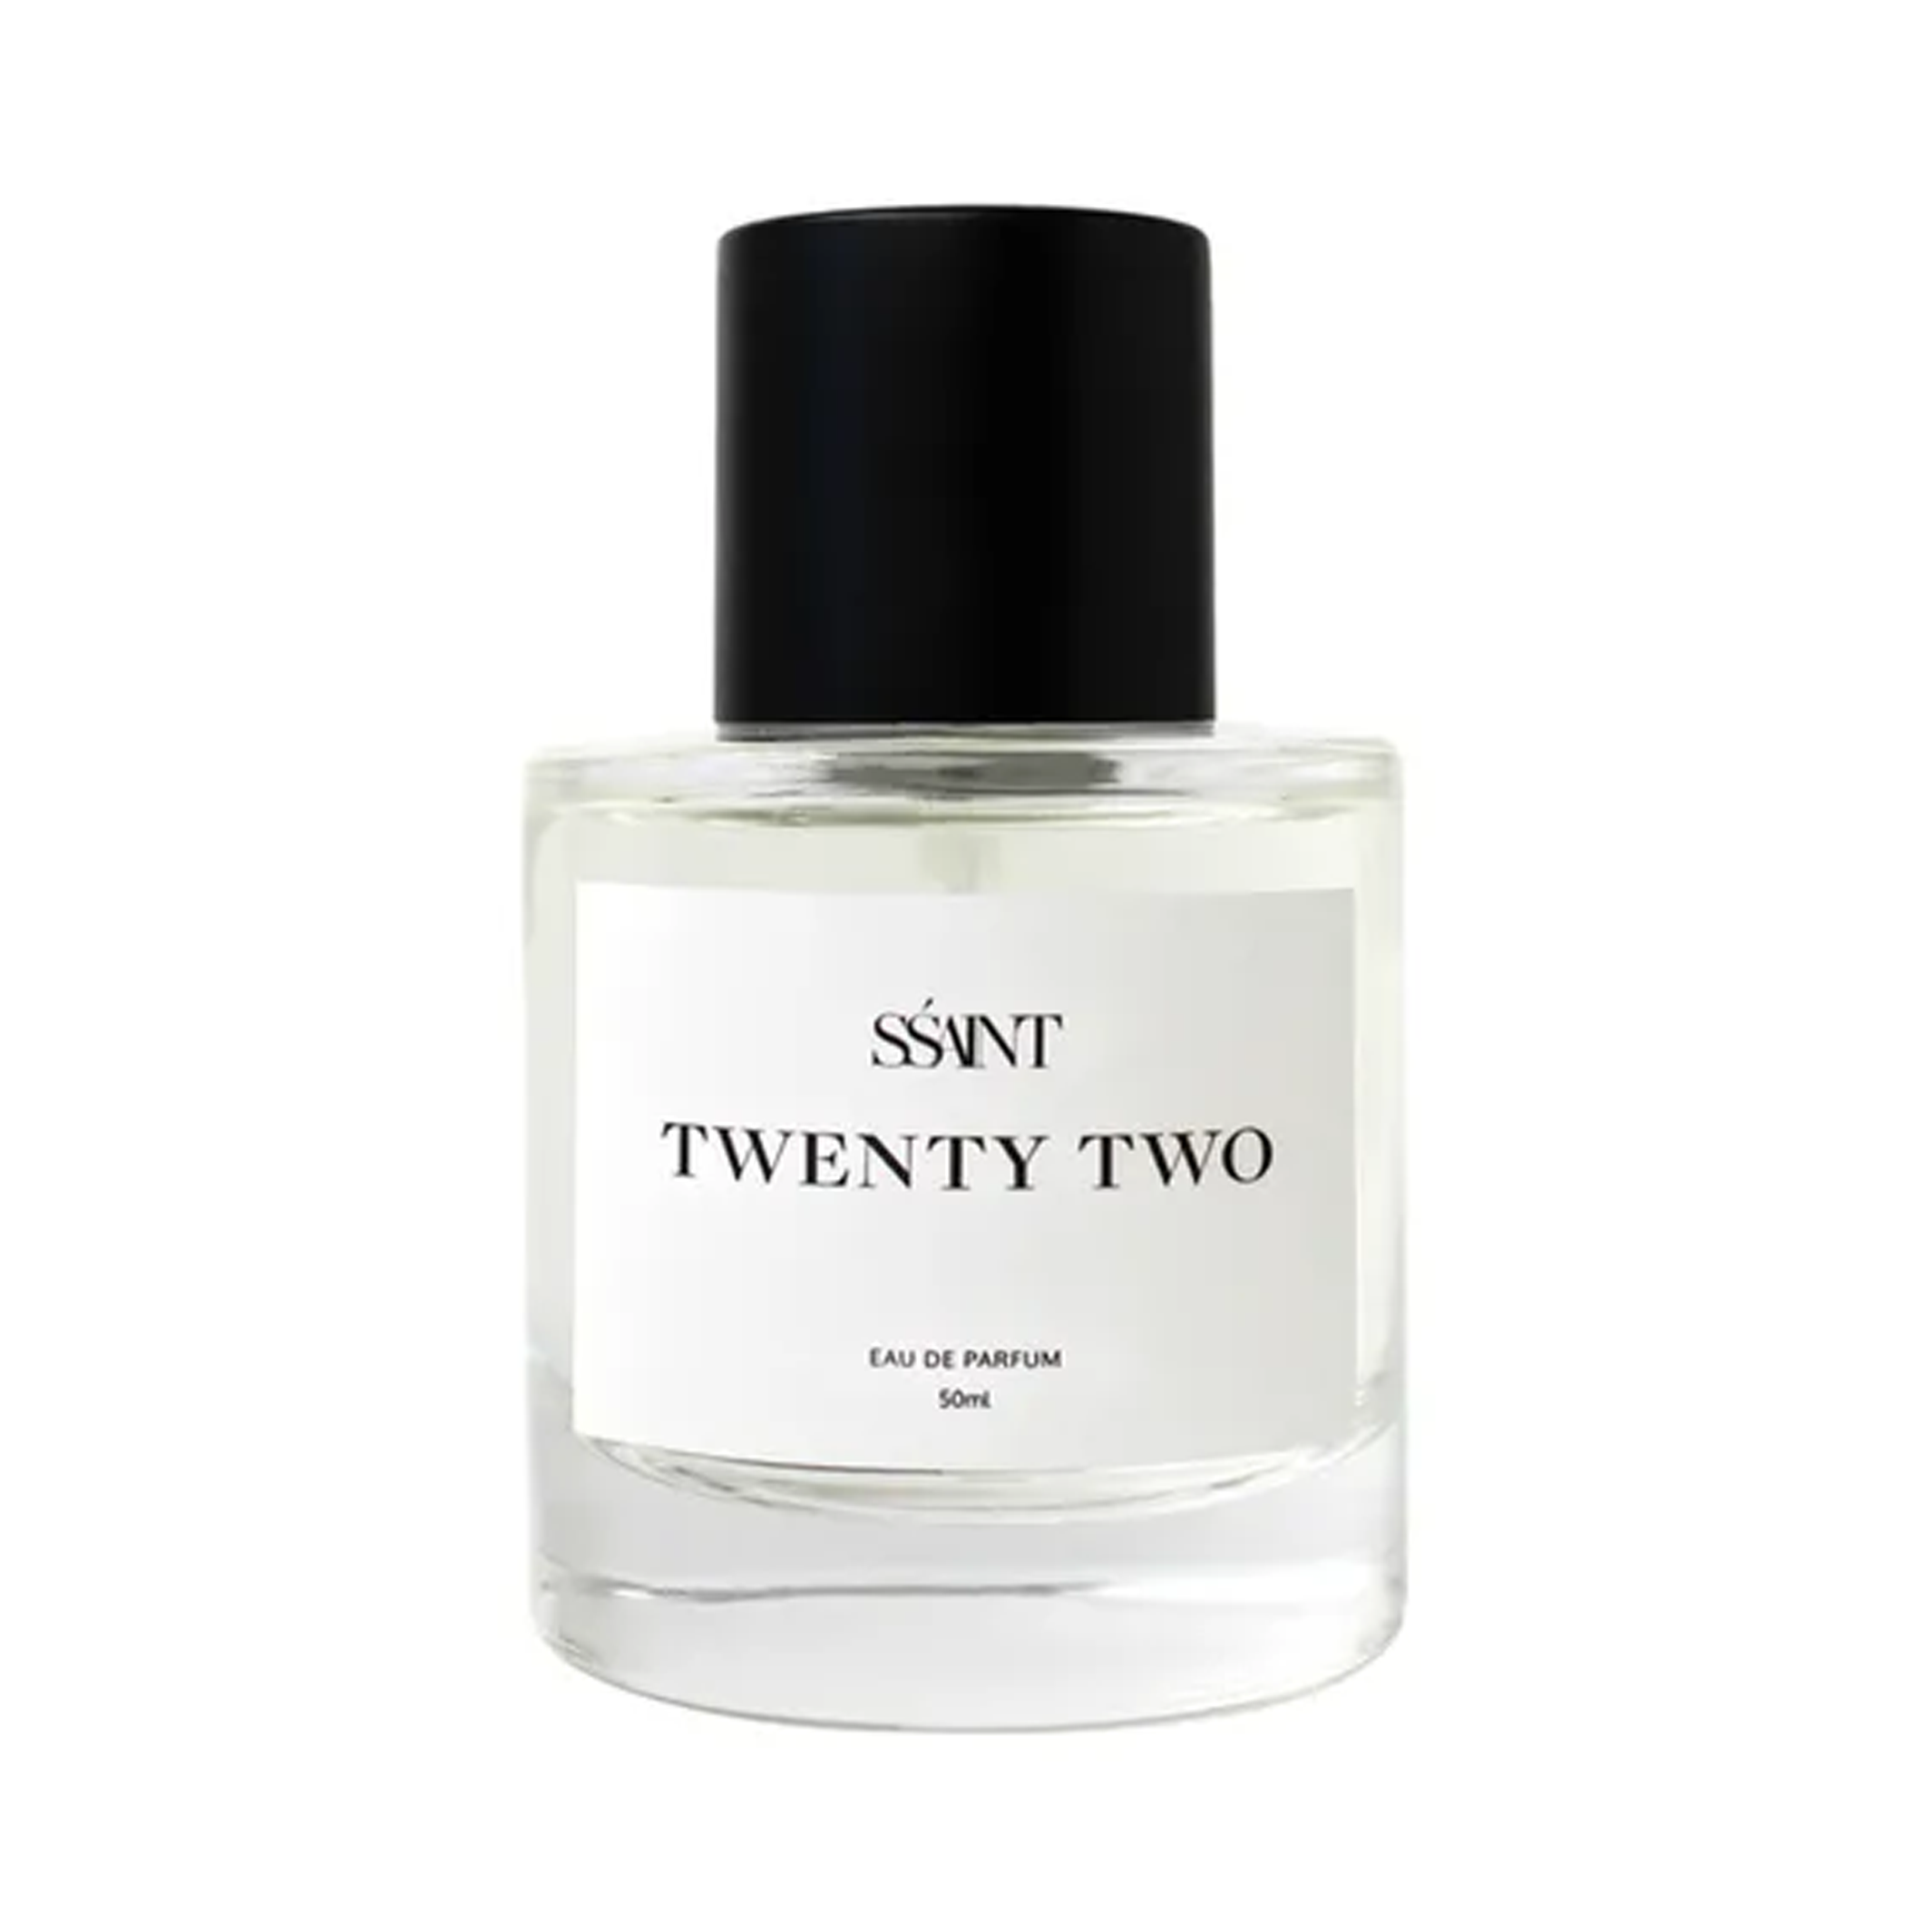 SŚAINT Parfum Twenty Two 50ml